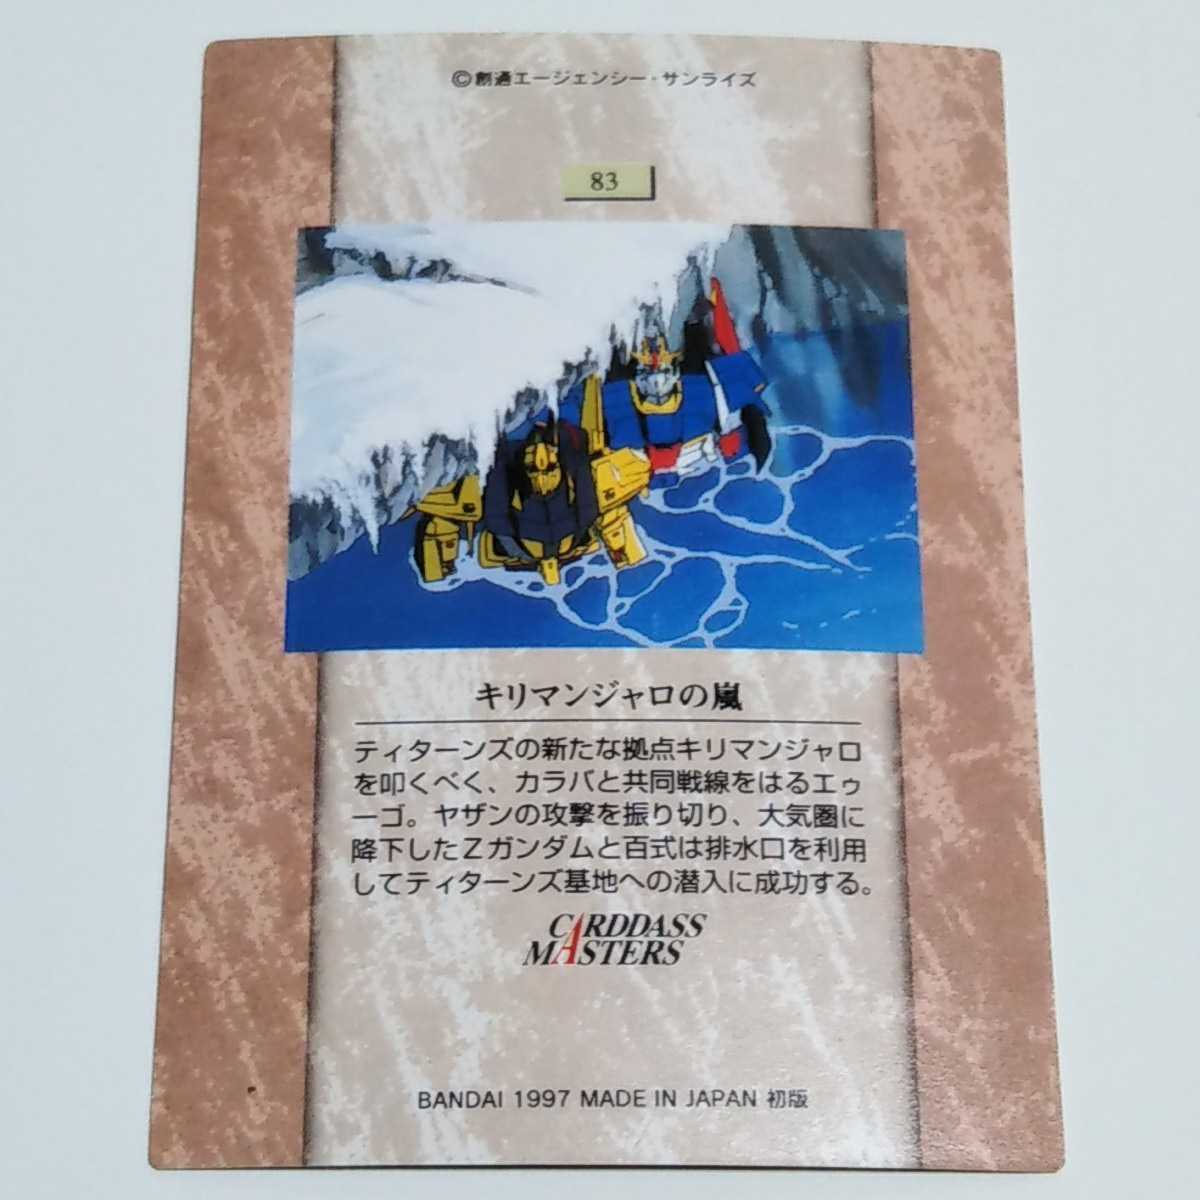 1997 ガンダムクロニクル2 機動戦士Zガンダム キリマンジャロの嵐 初版 カード カードダスマスターズ No.83_画像2